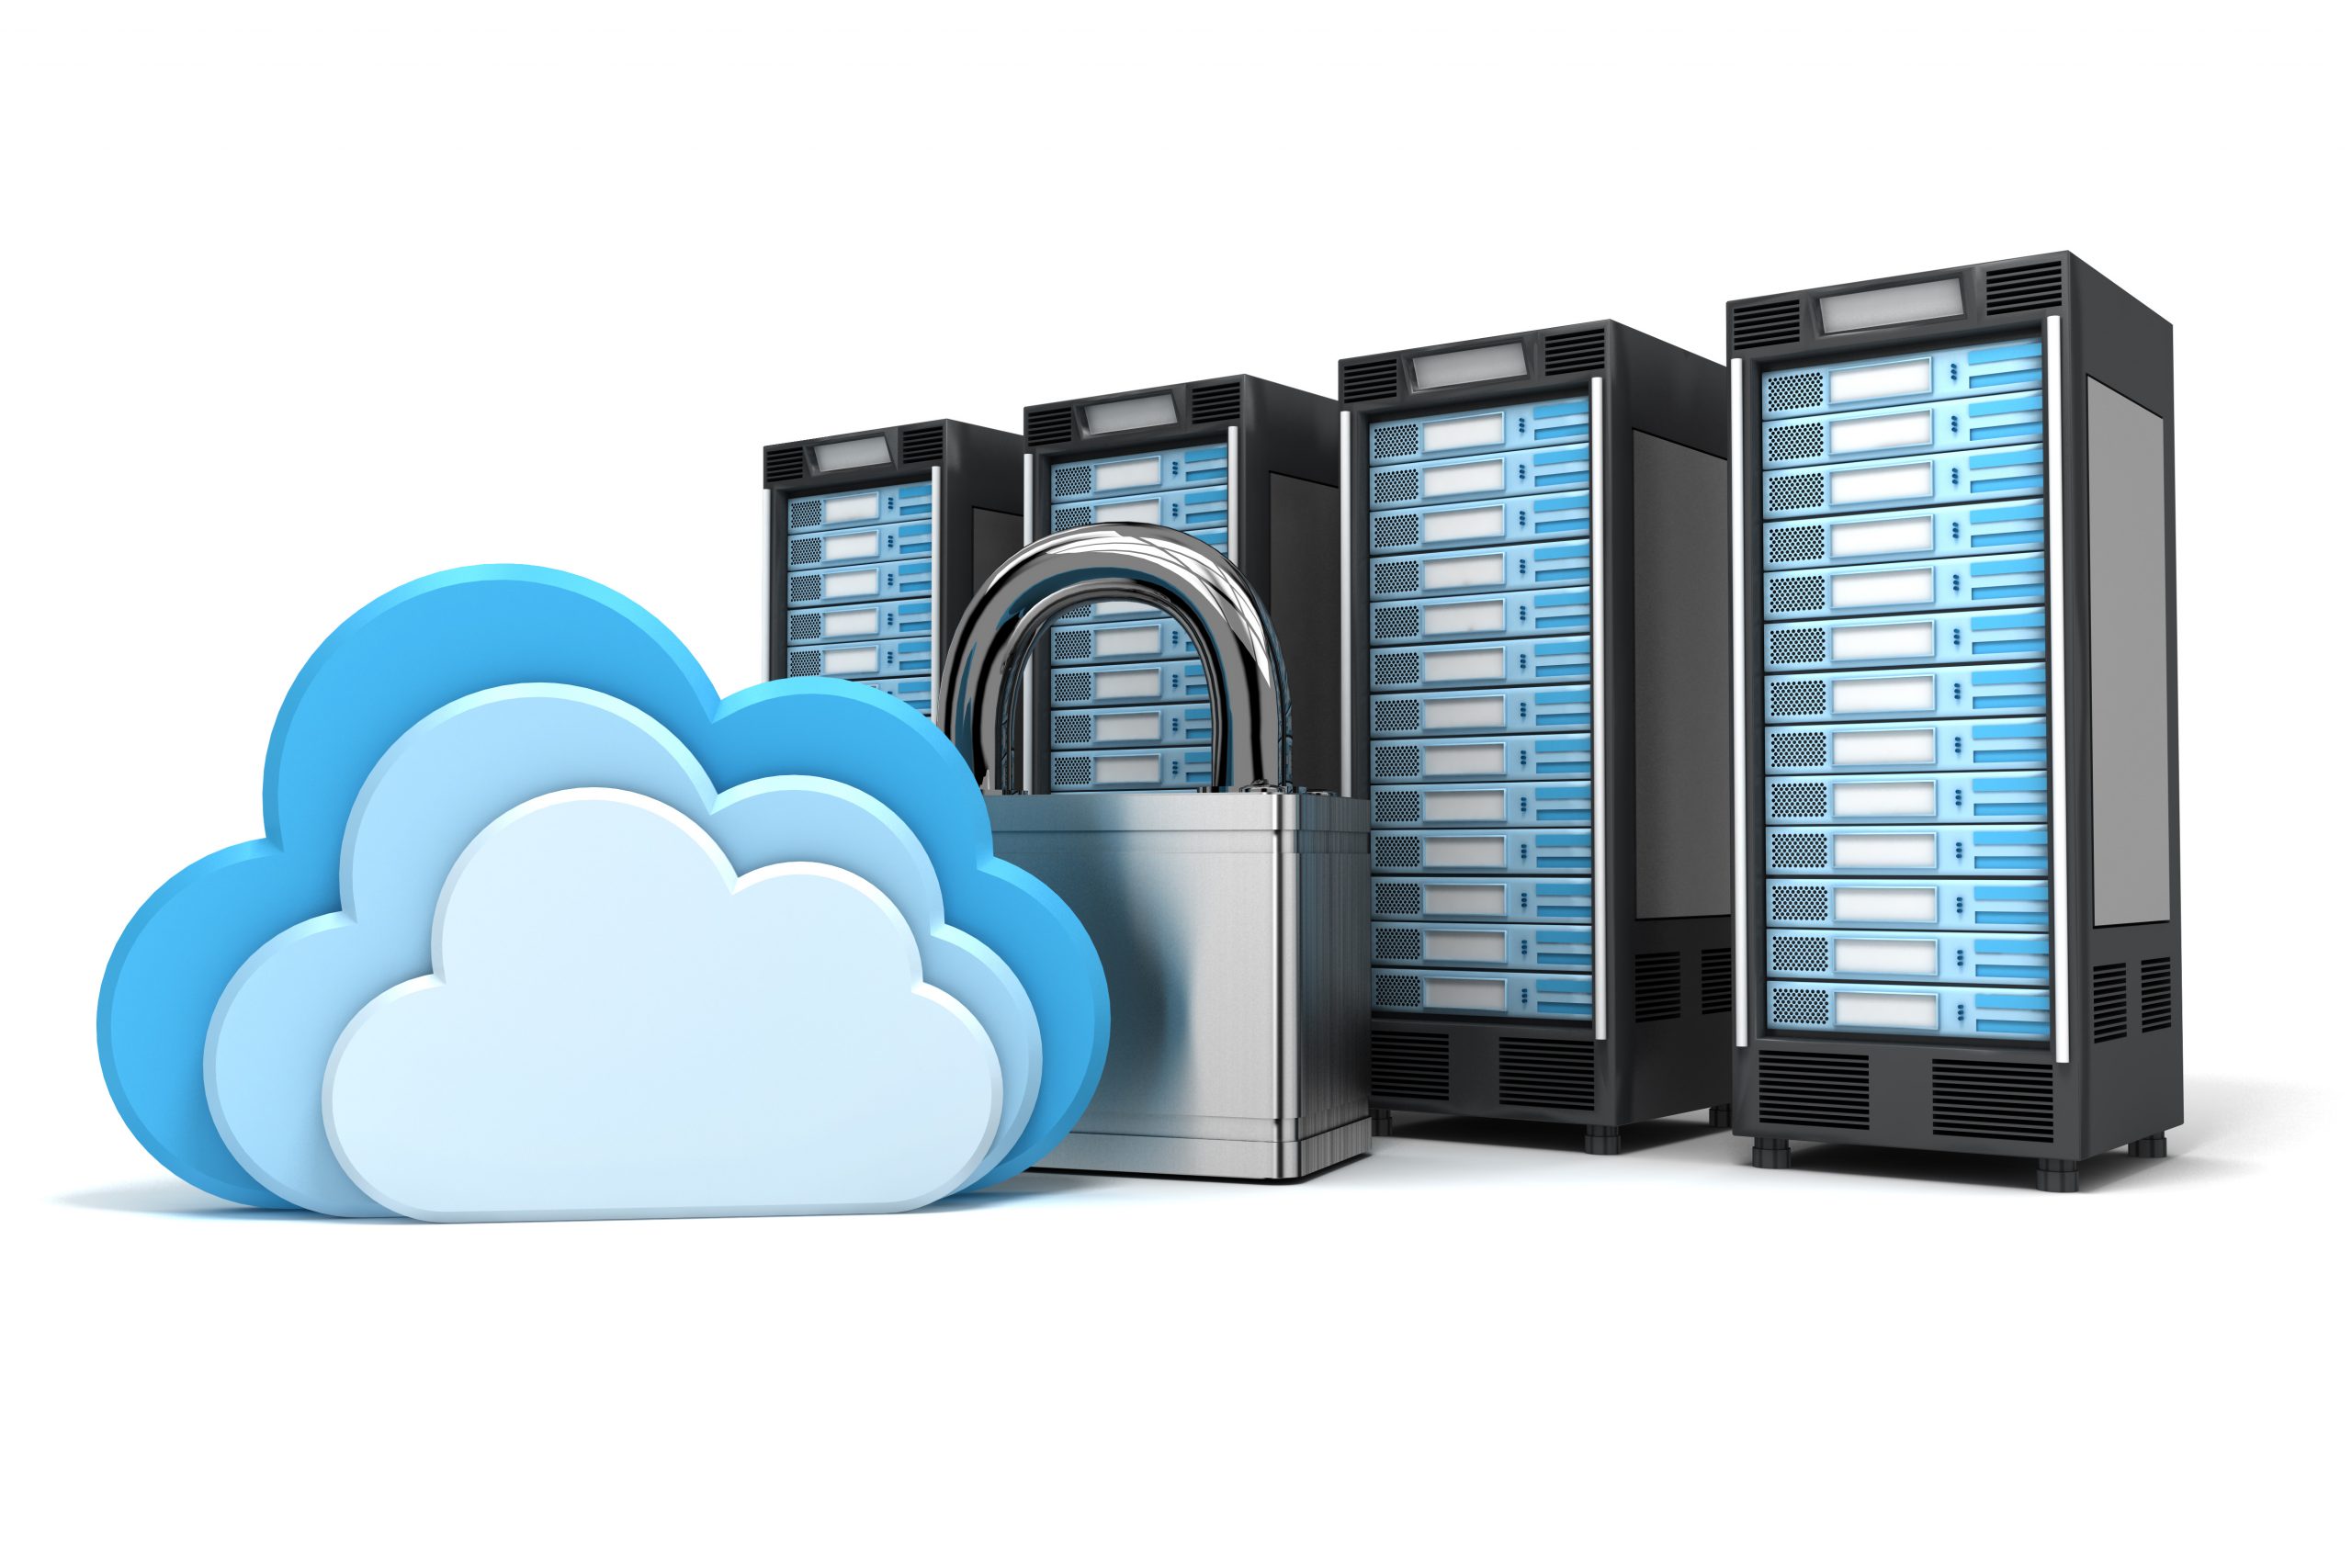 Máy chủ Cloud là một công nghệ lưu trữ dữ liệu trực tuyến